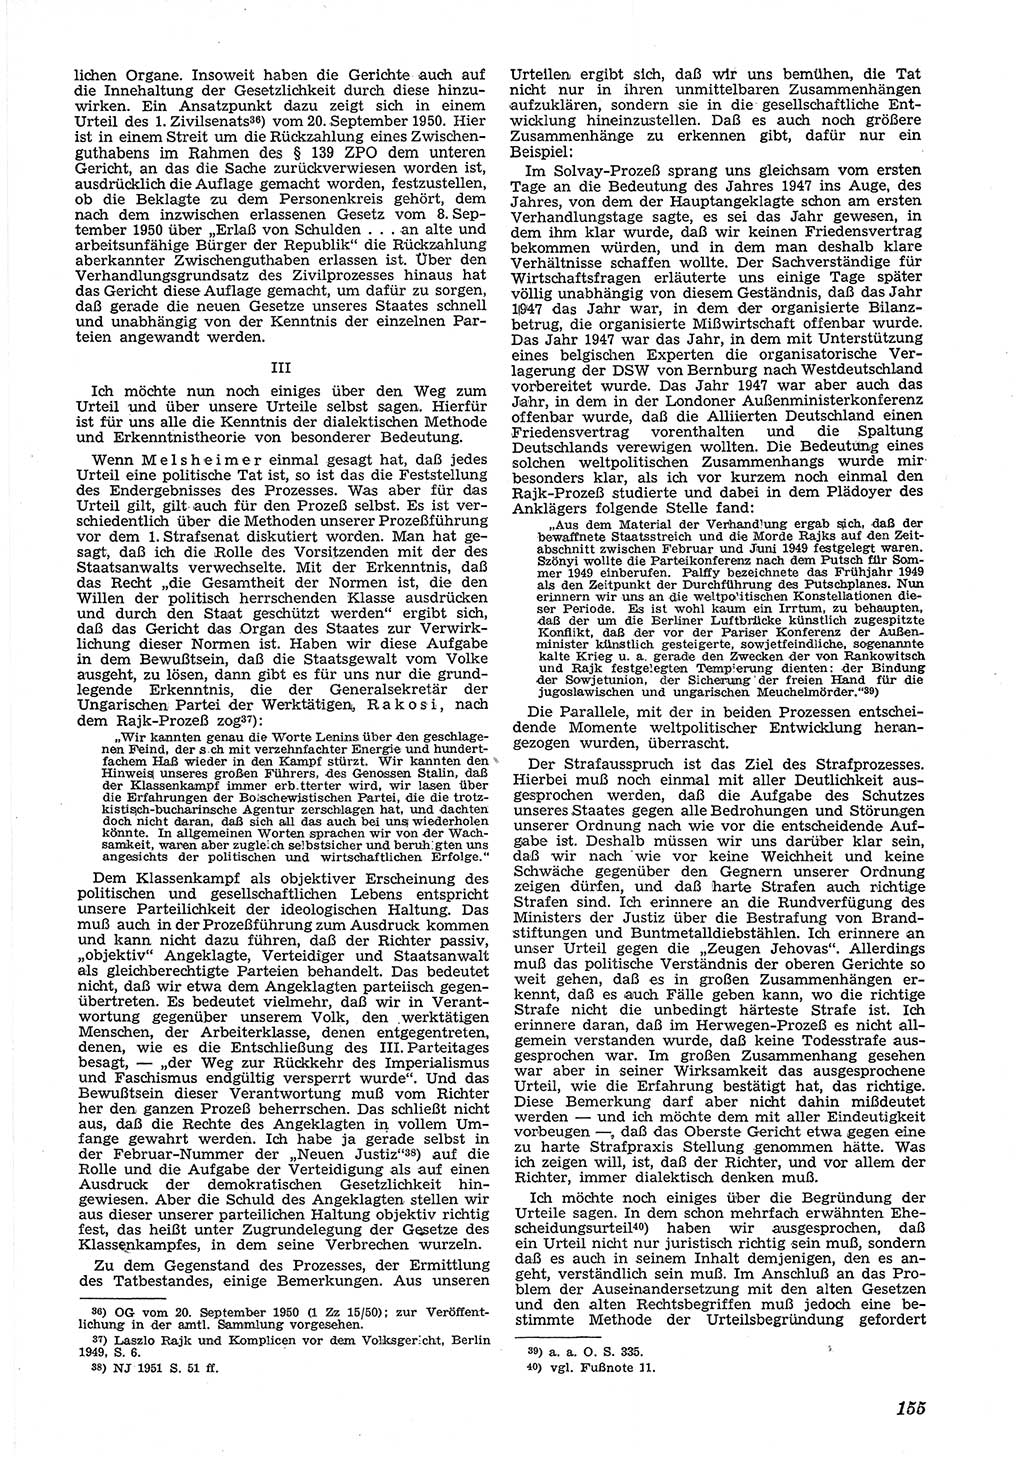 Neue Justiz (NJ), Zeitschrift für Recht und Rechtswissenschaft [Deutsche Demokratische Republik (DDR)], 5. Jahrgang 1951, Seite 155 (NJ DDR 1951, S. 155)